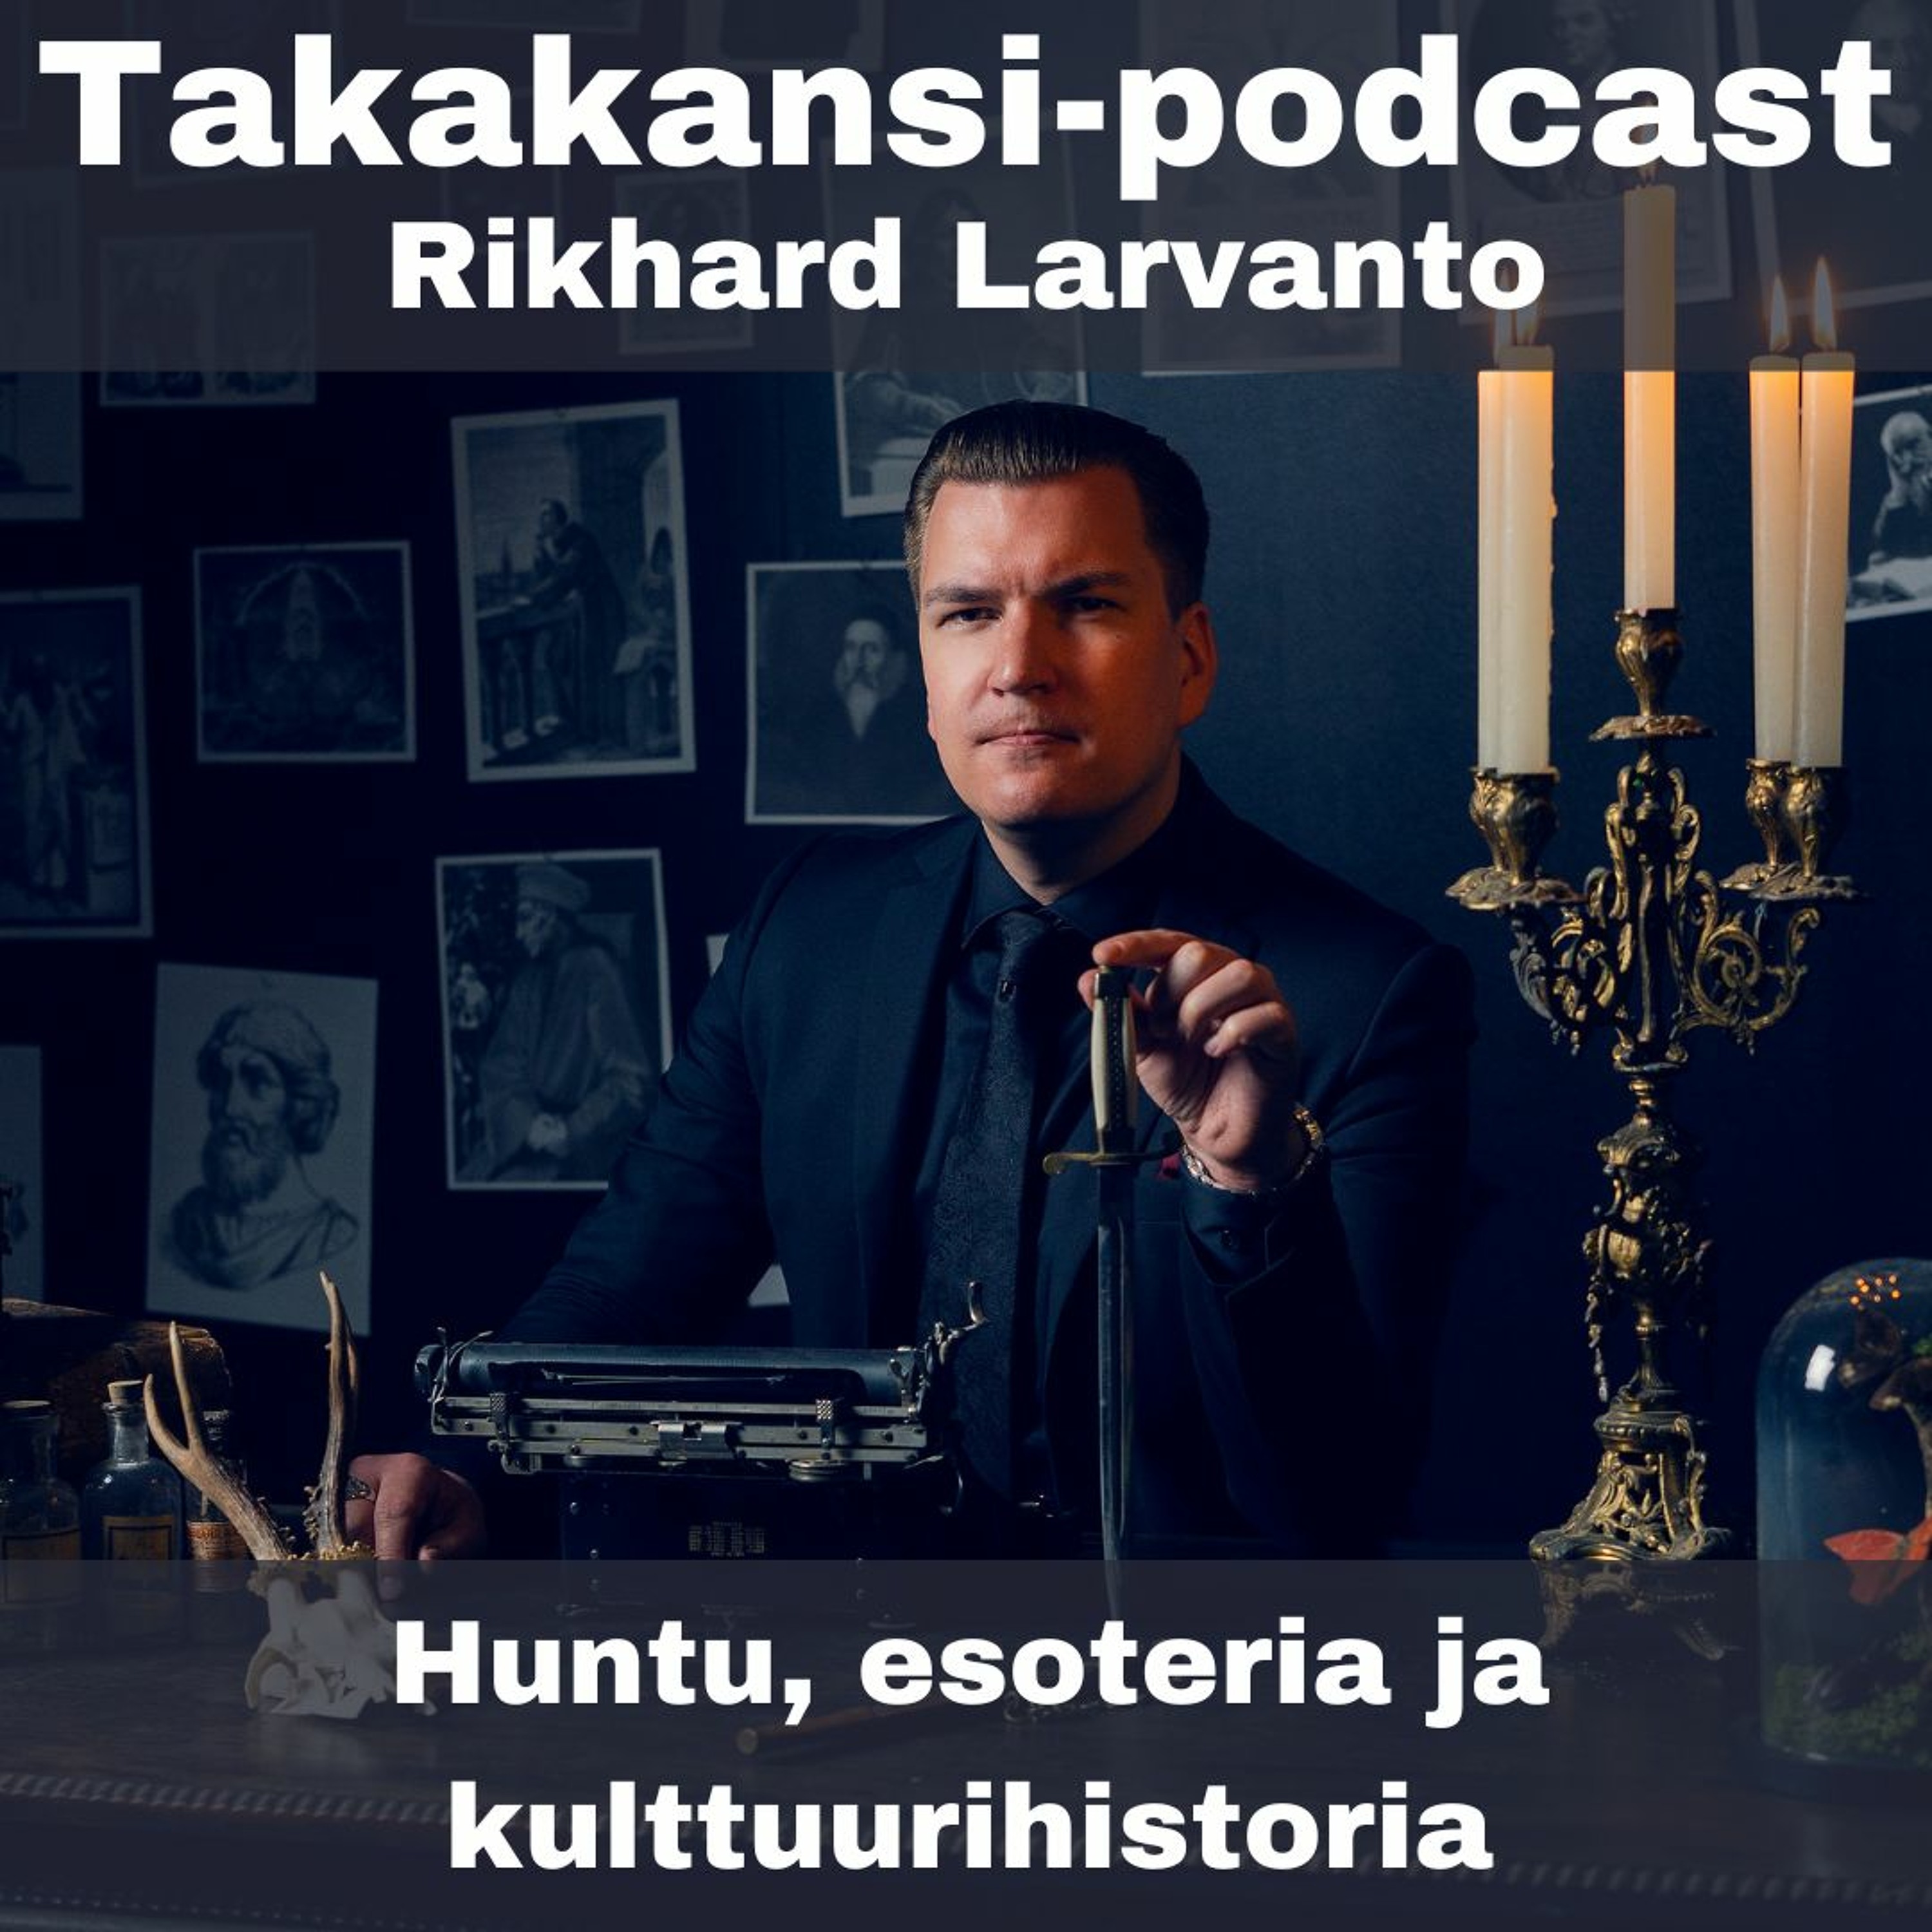 Rikhard Larvanto - Huntu, esoteria ja kulttuurihistoria